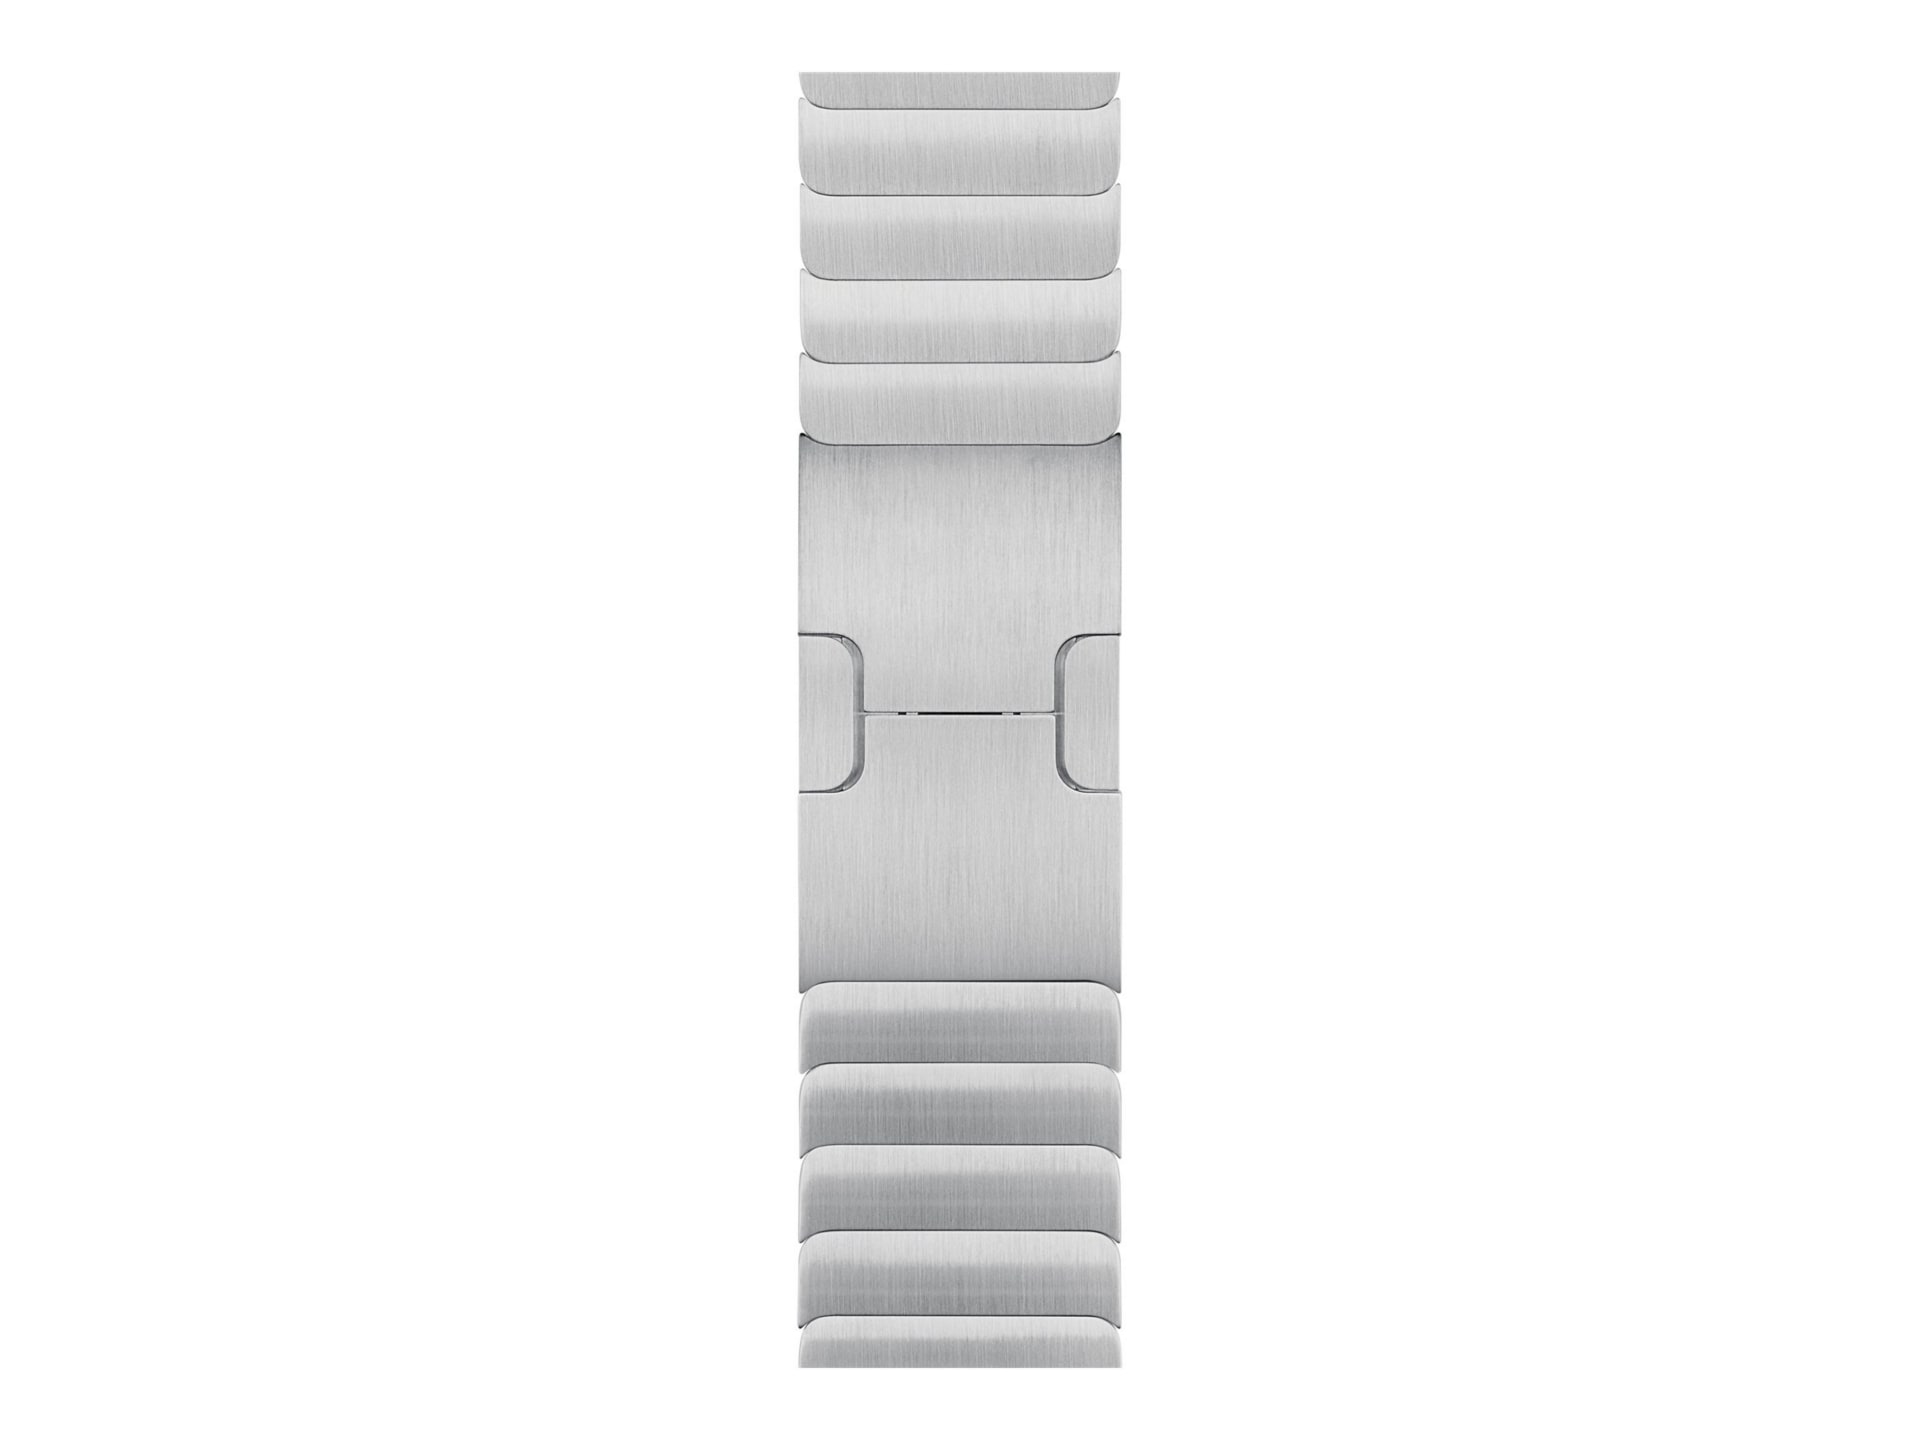 Apple - bracelet de montre pour montre intelligente - 38mm